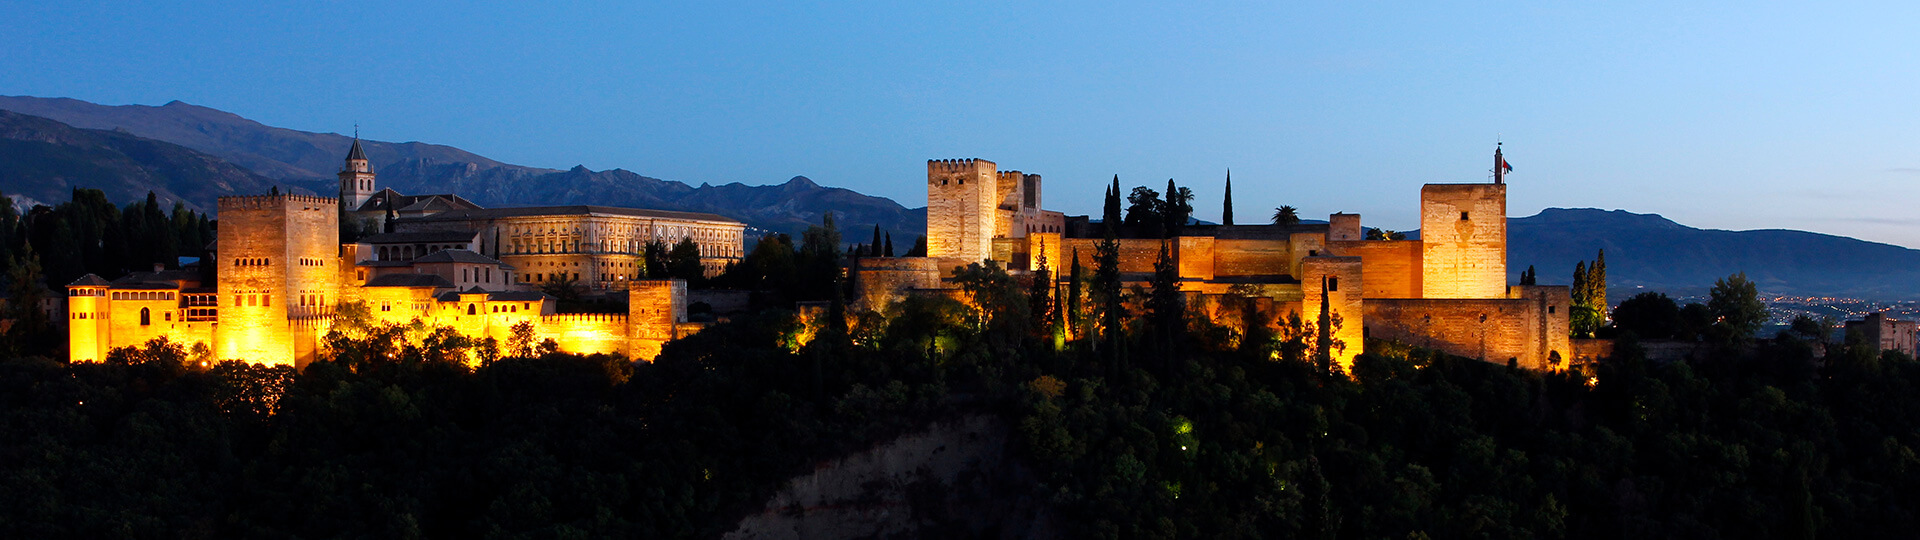 Vue panoramique nocturne de l'Alhambra de Grenade